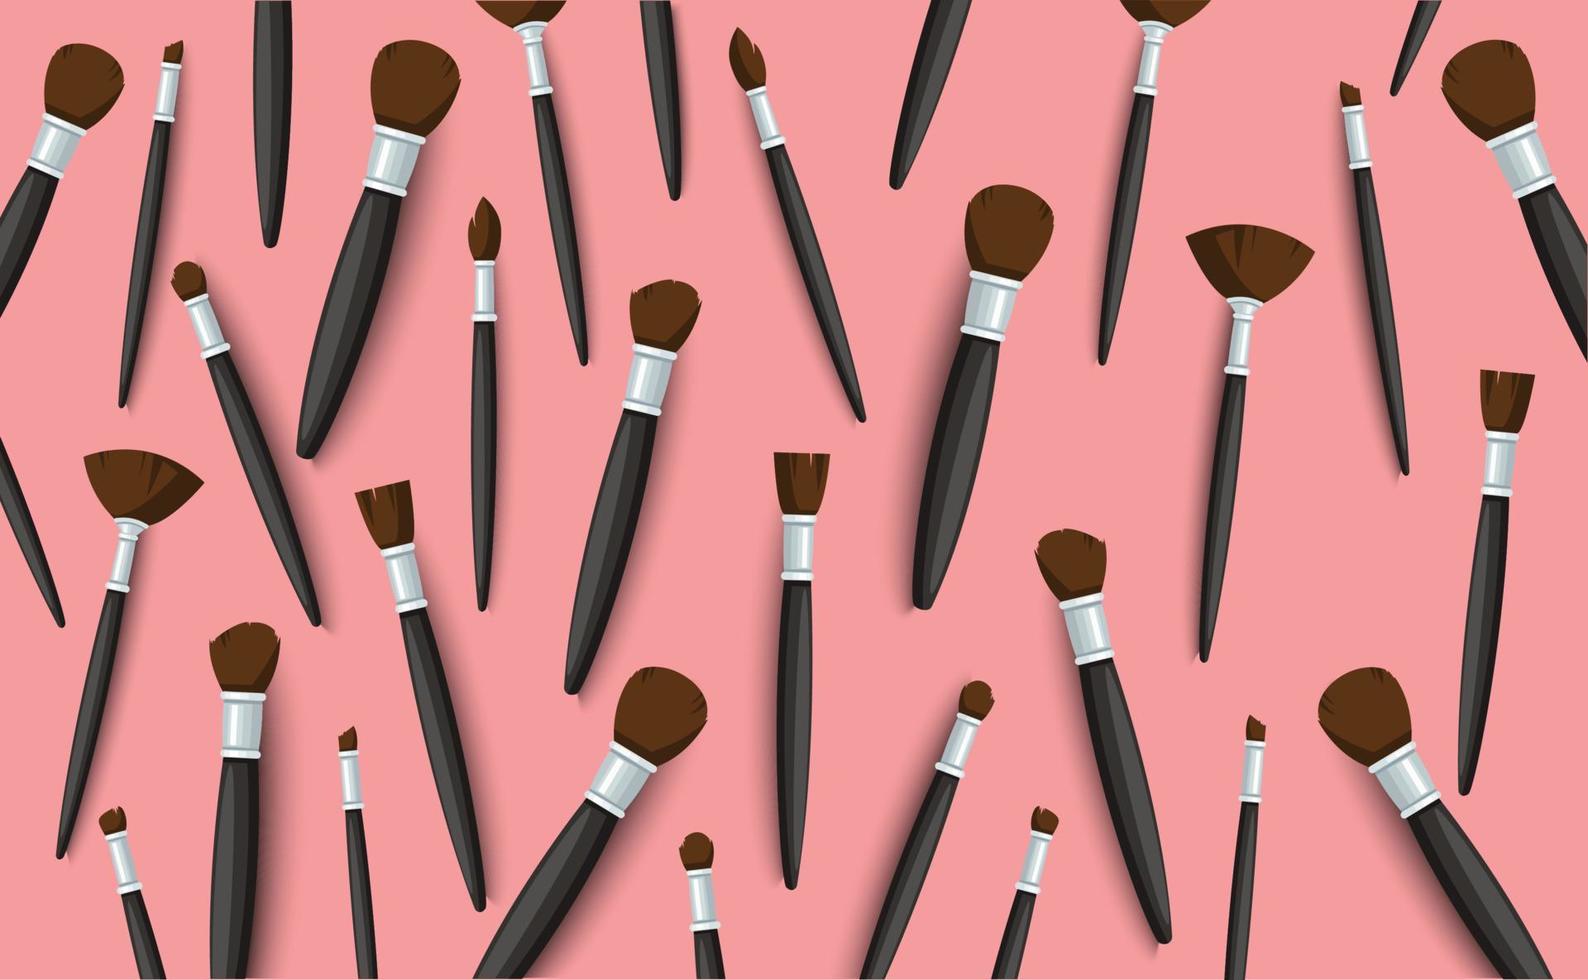 Make Up Brushes background. Vector illustration